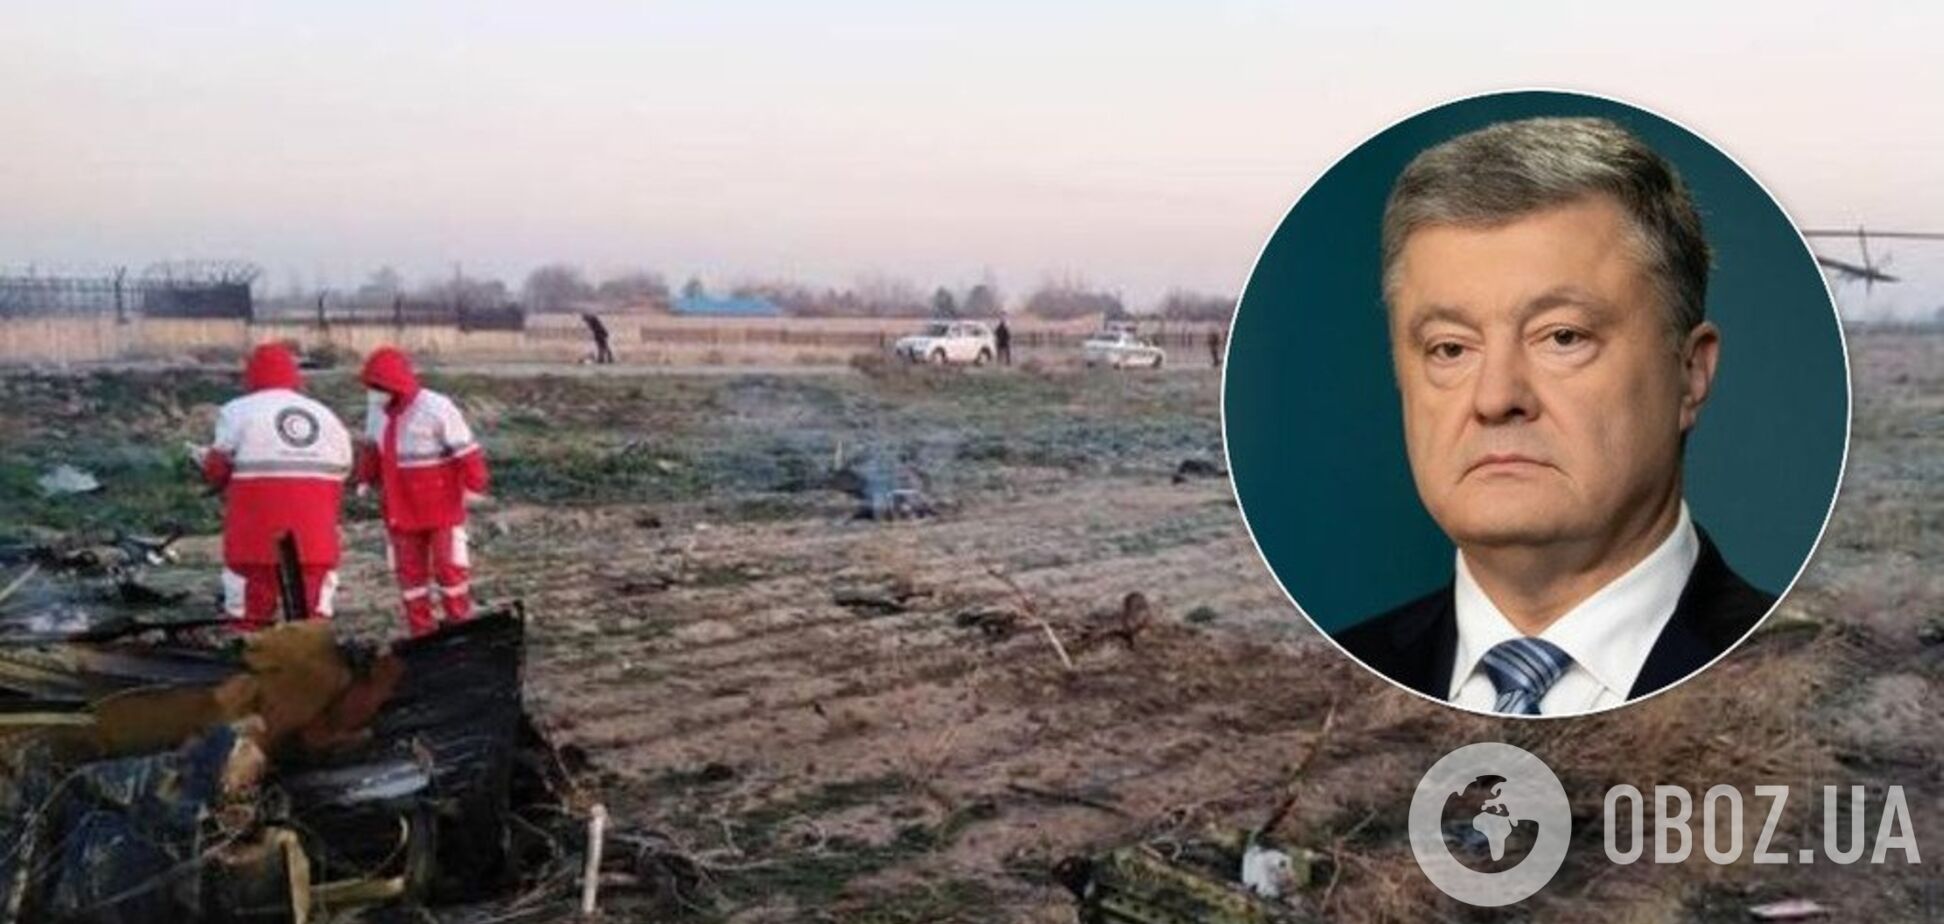 'Нет большего горя, как терять близких!' Порошенко отреагировал на трагедию с самолетом МАУ в Иране